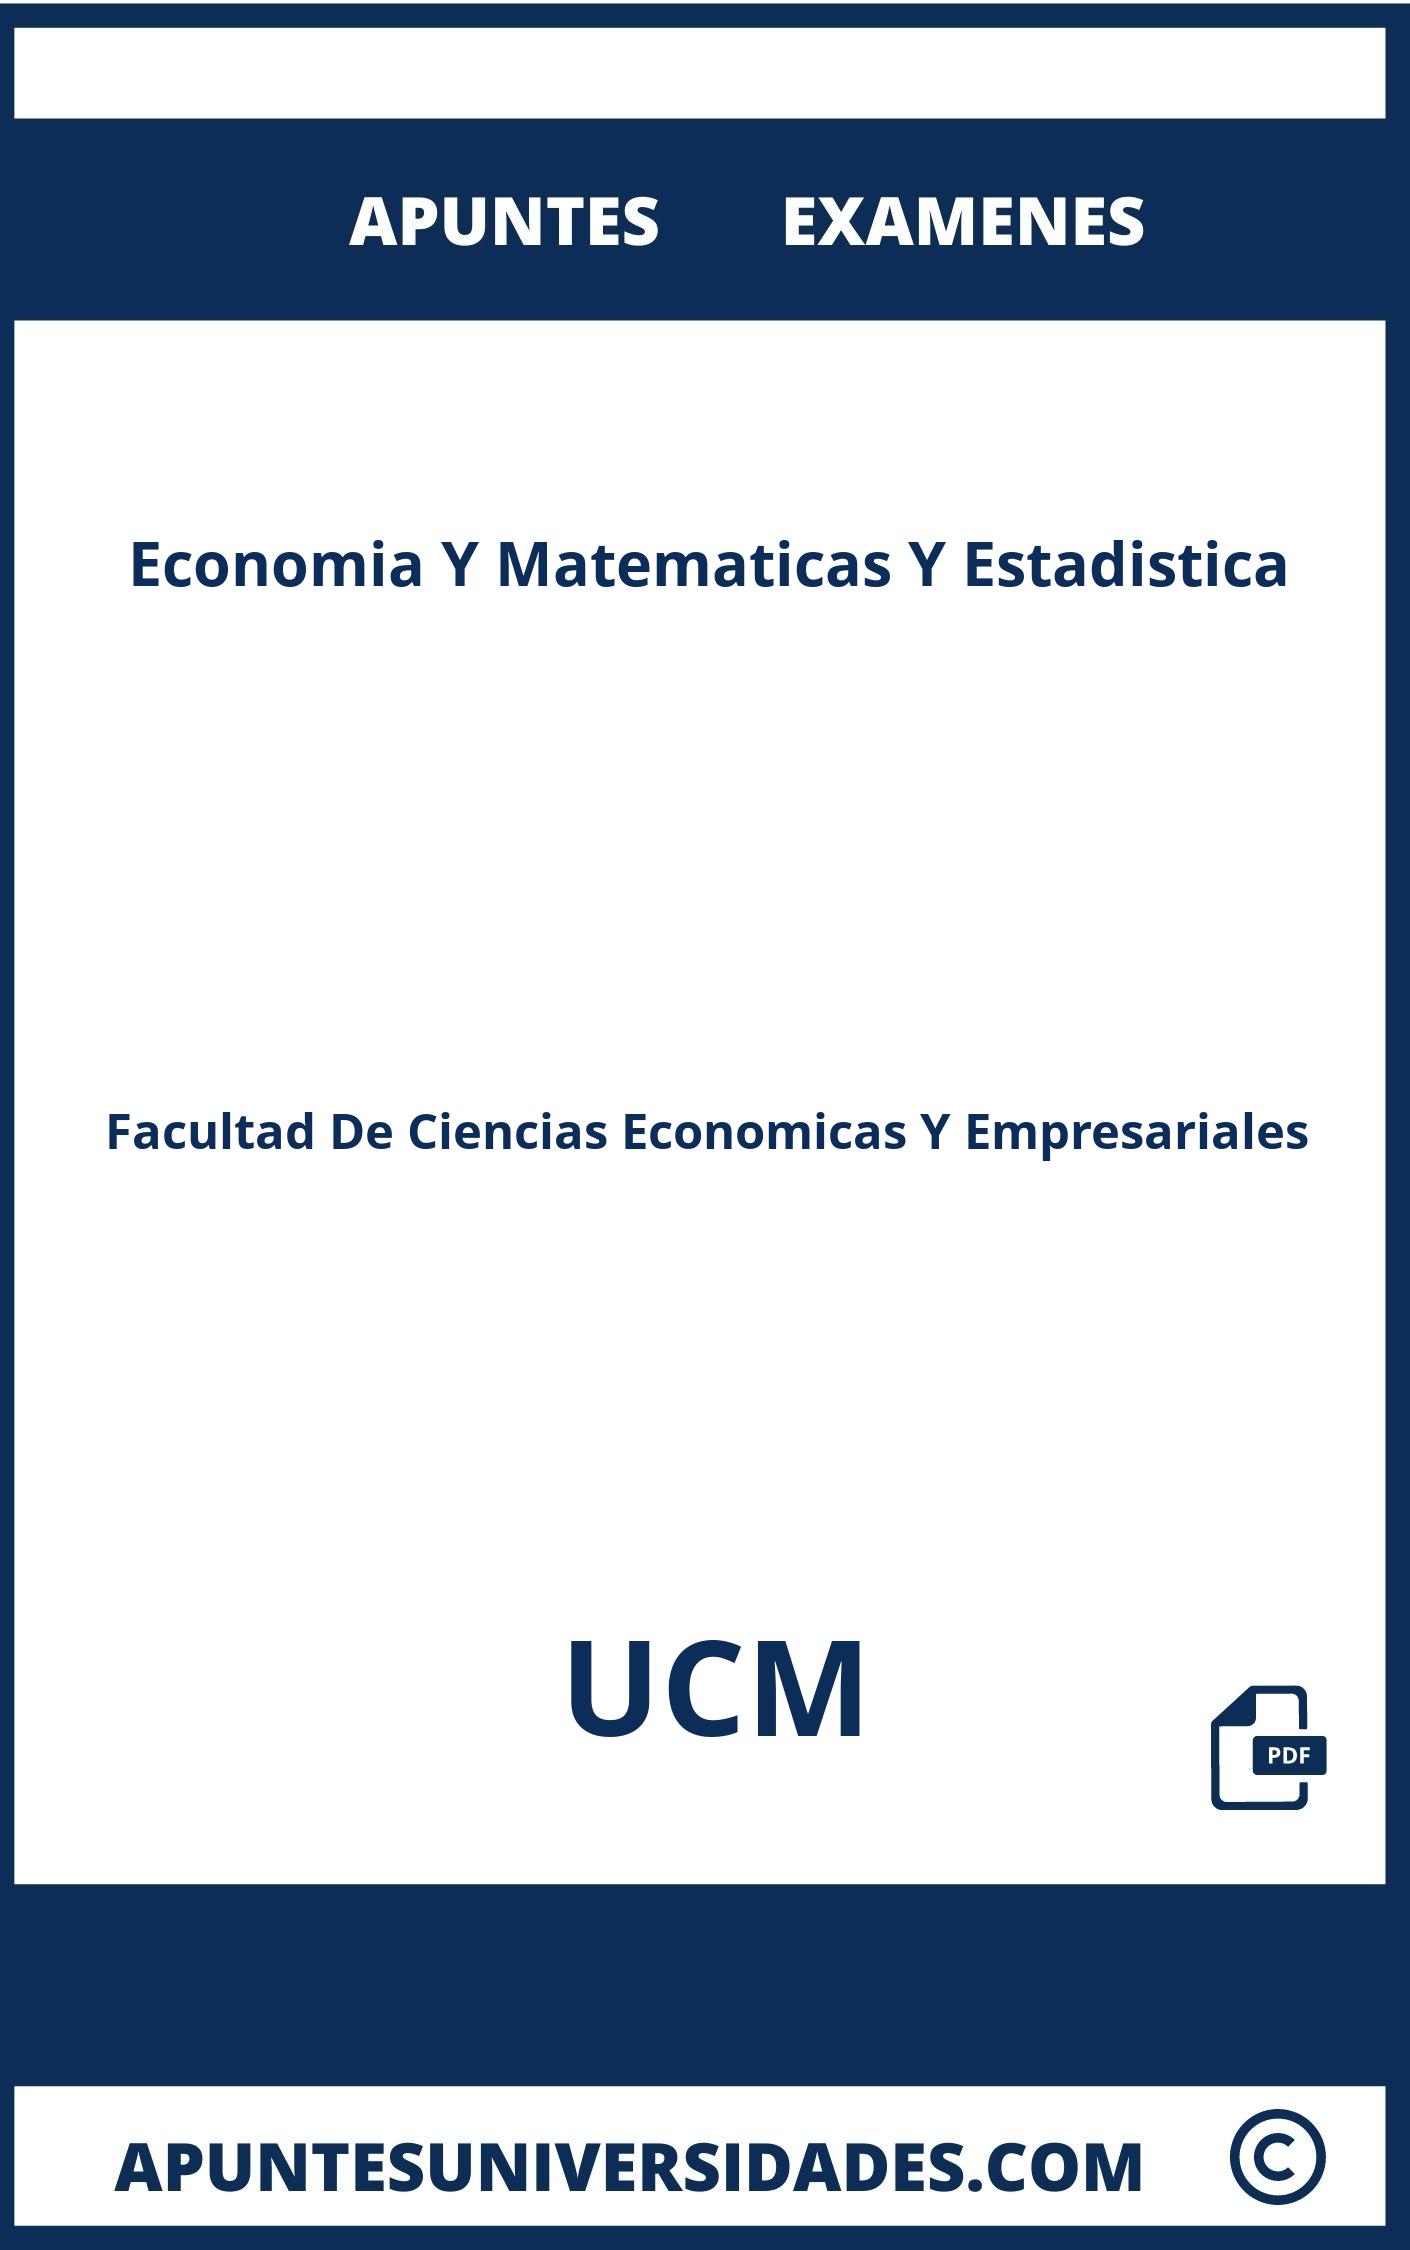 Examenes Apuntes Economia Y Matematicas Y Estadistica UCM